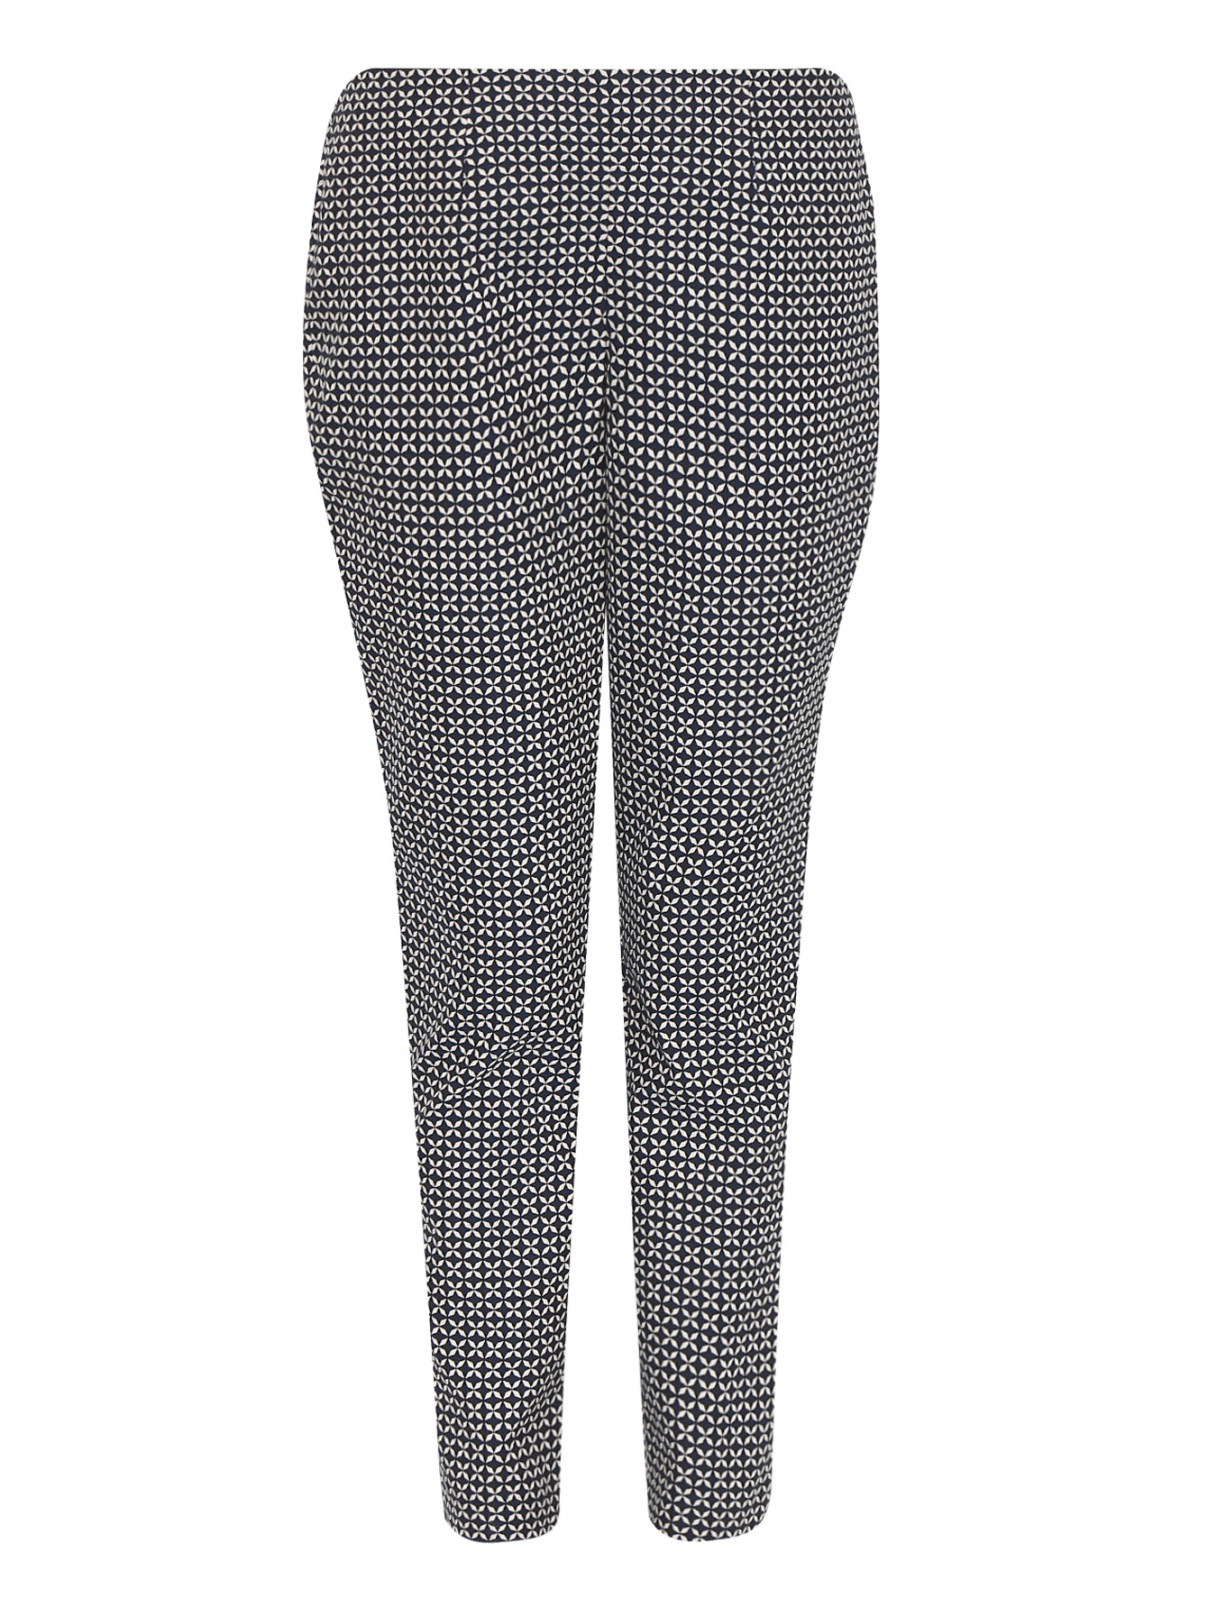 Укороченные брюки из хлопка с узором Luisa Spagnoli  –  Общий вид  – Цвет:  Узор